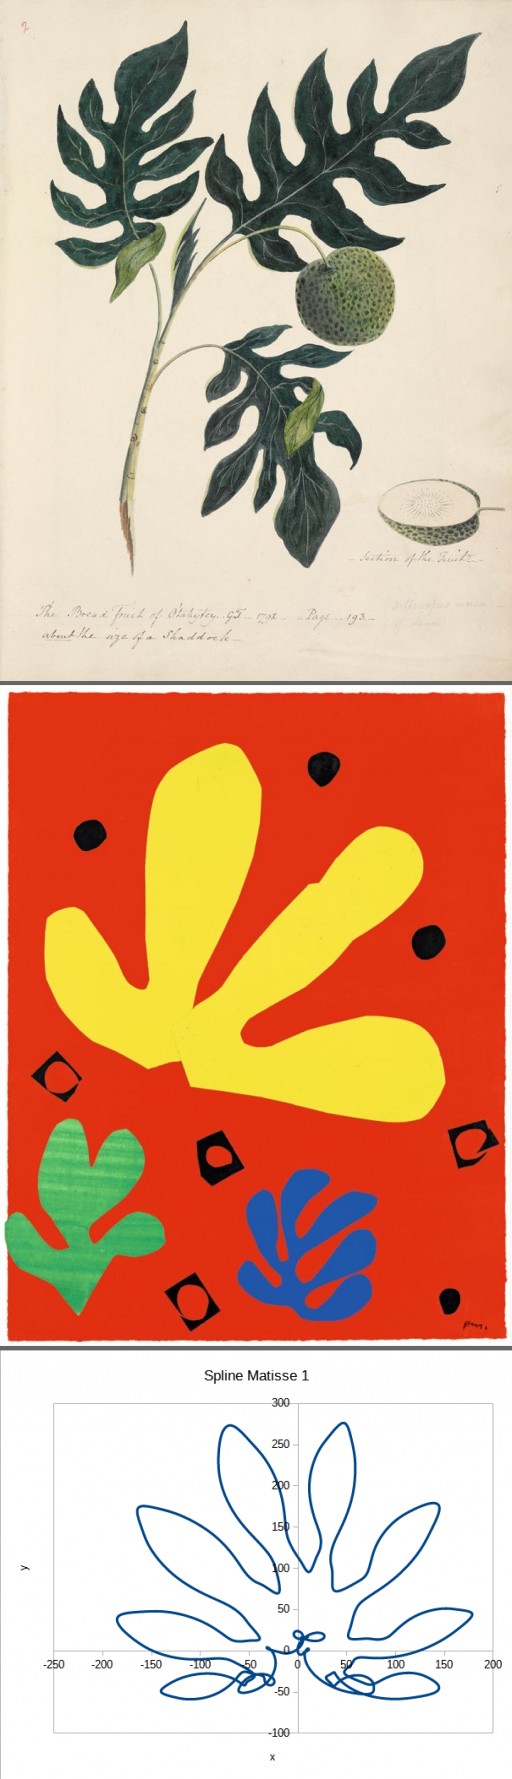 Image article, Branche, feuilles et fruit de l’arbre à pain (mediatheque-polynesie.org)
Henri Matisse, élémen